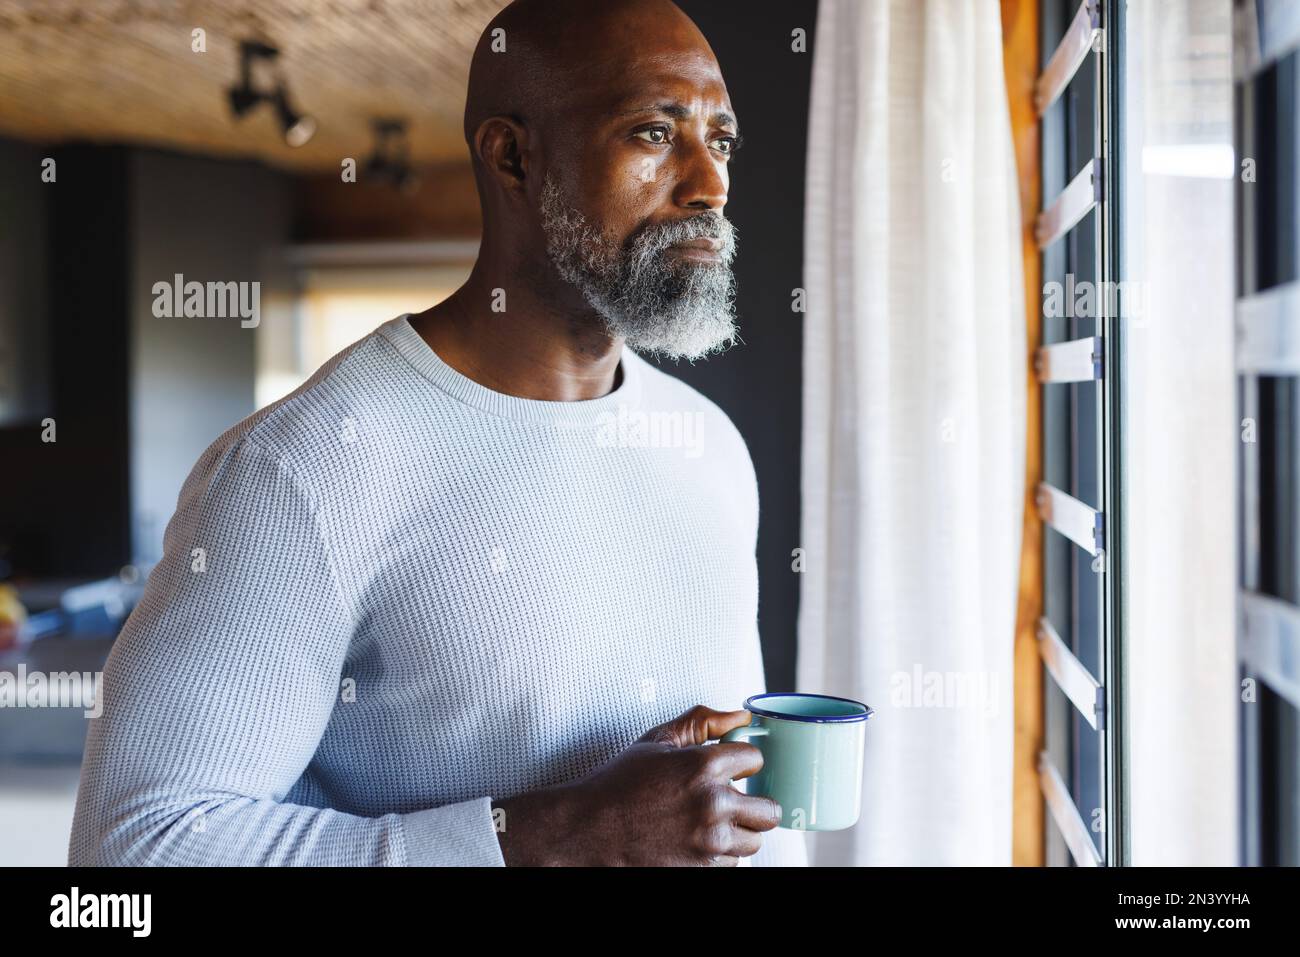 Homme senior américain et chauve attentionné avec tasse à café regardant par la fenêtre dans la cabane en rondins Banque D'Images